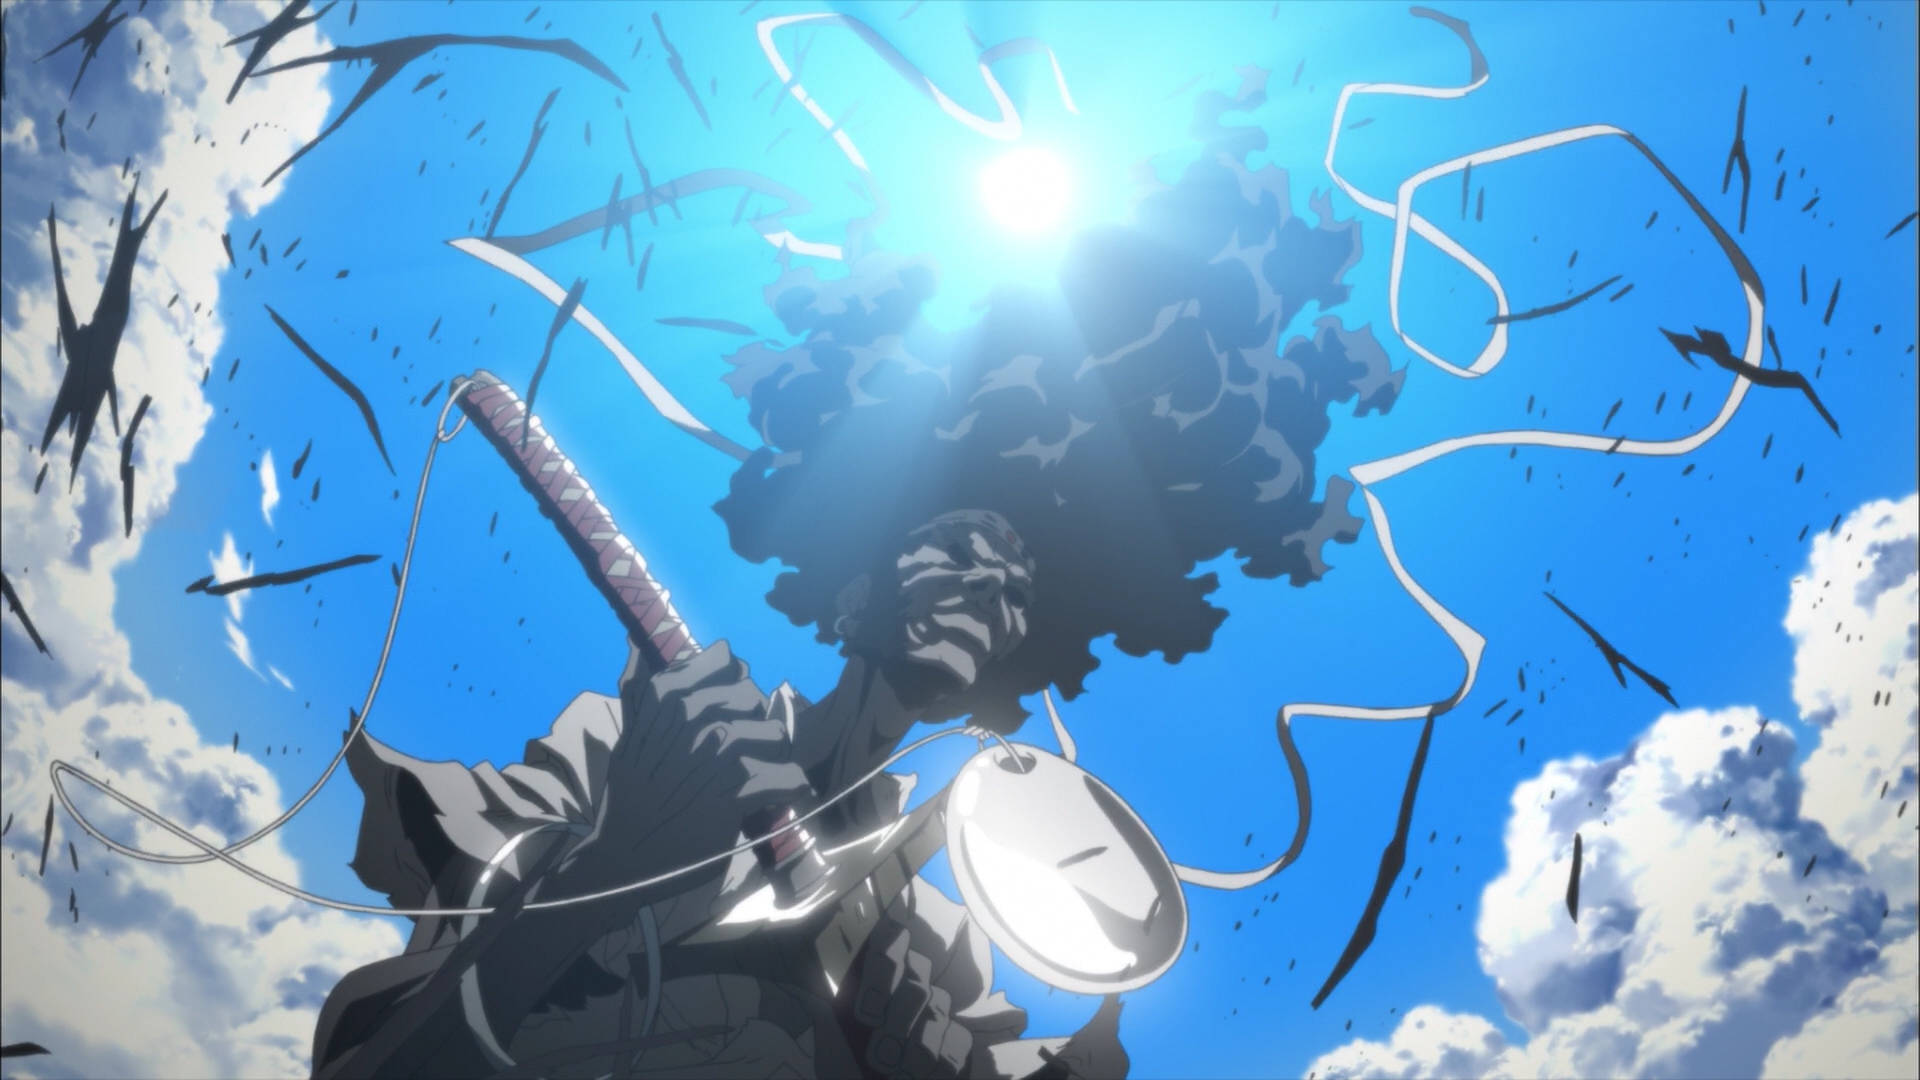 Anime Samurai Kriger skaber en mystisk fortryllende stemning. Wallpaper